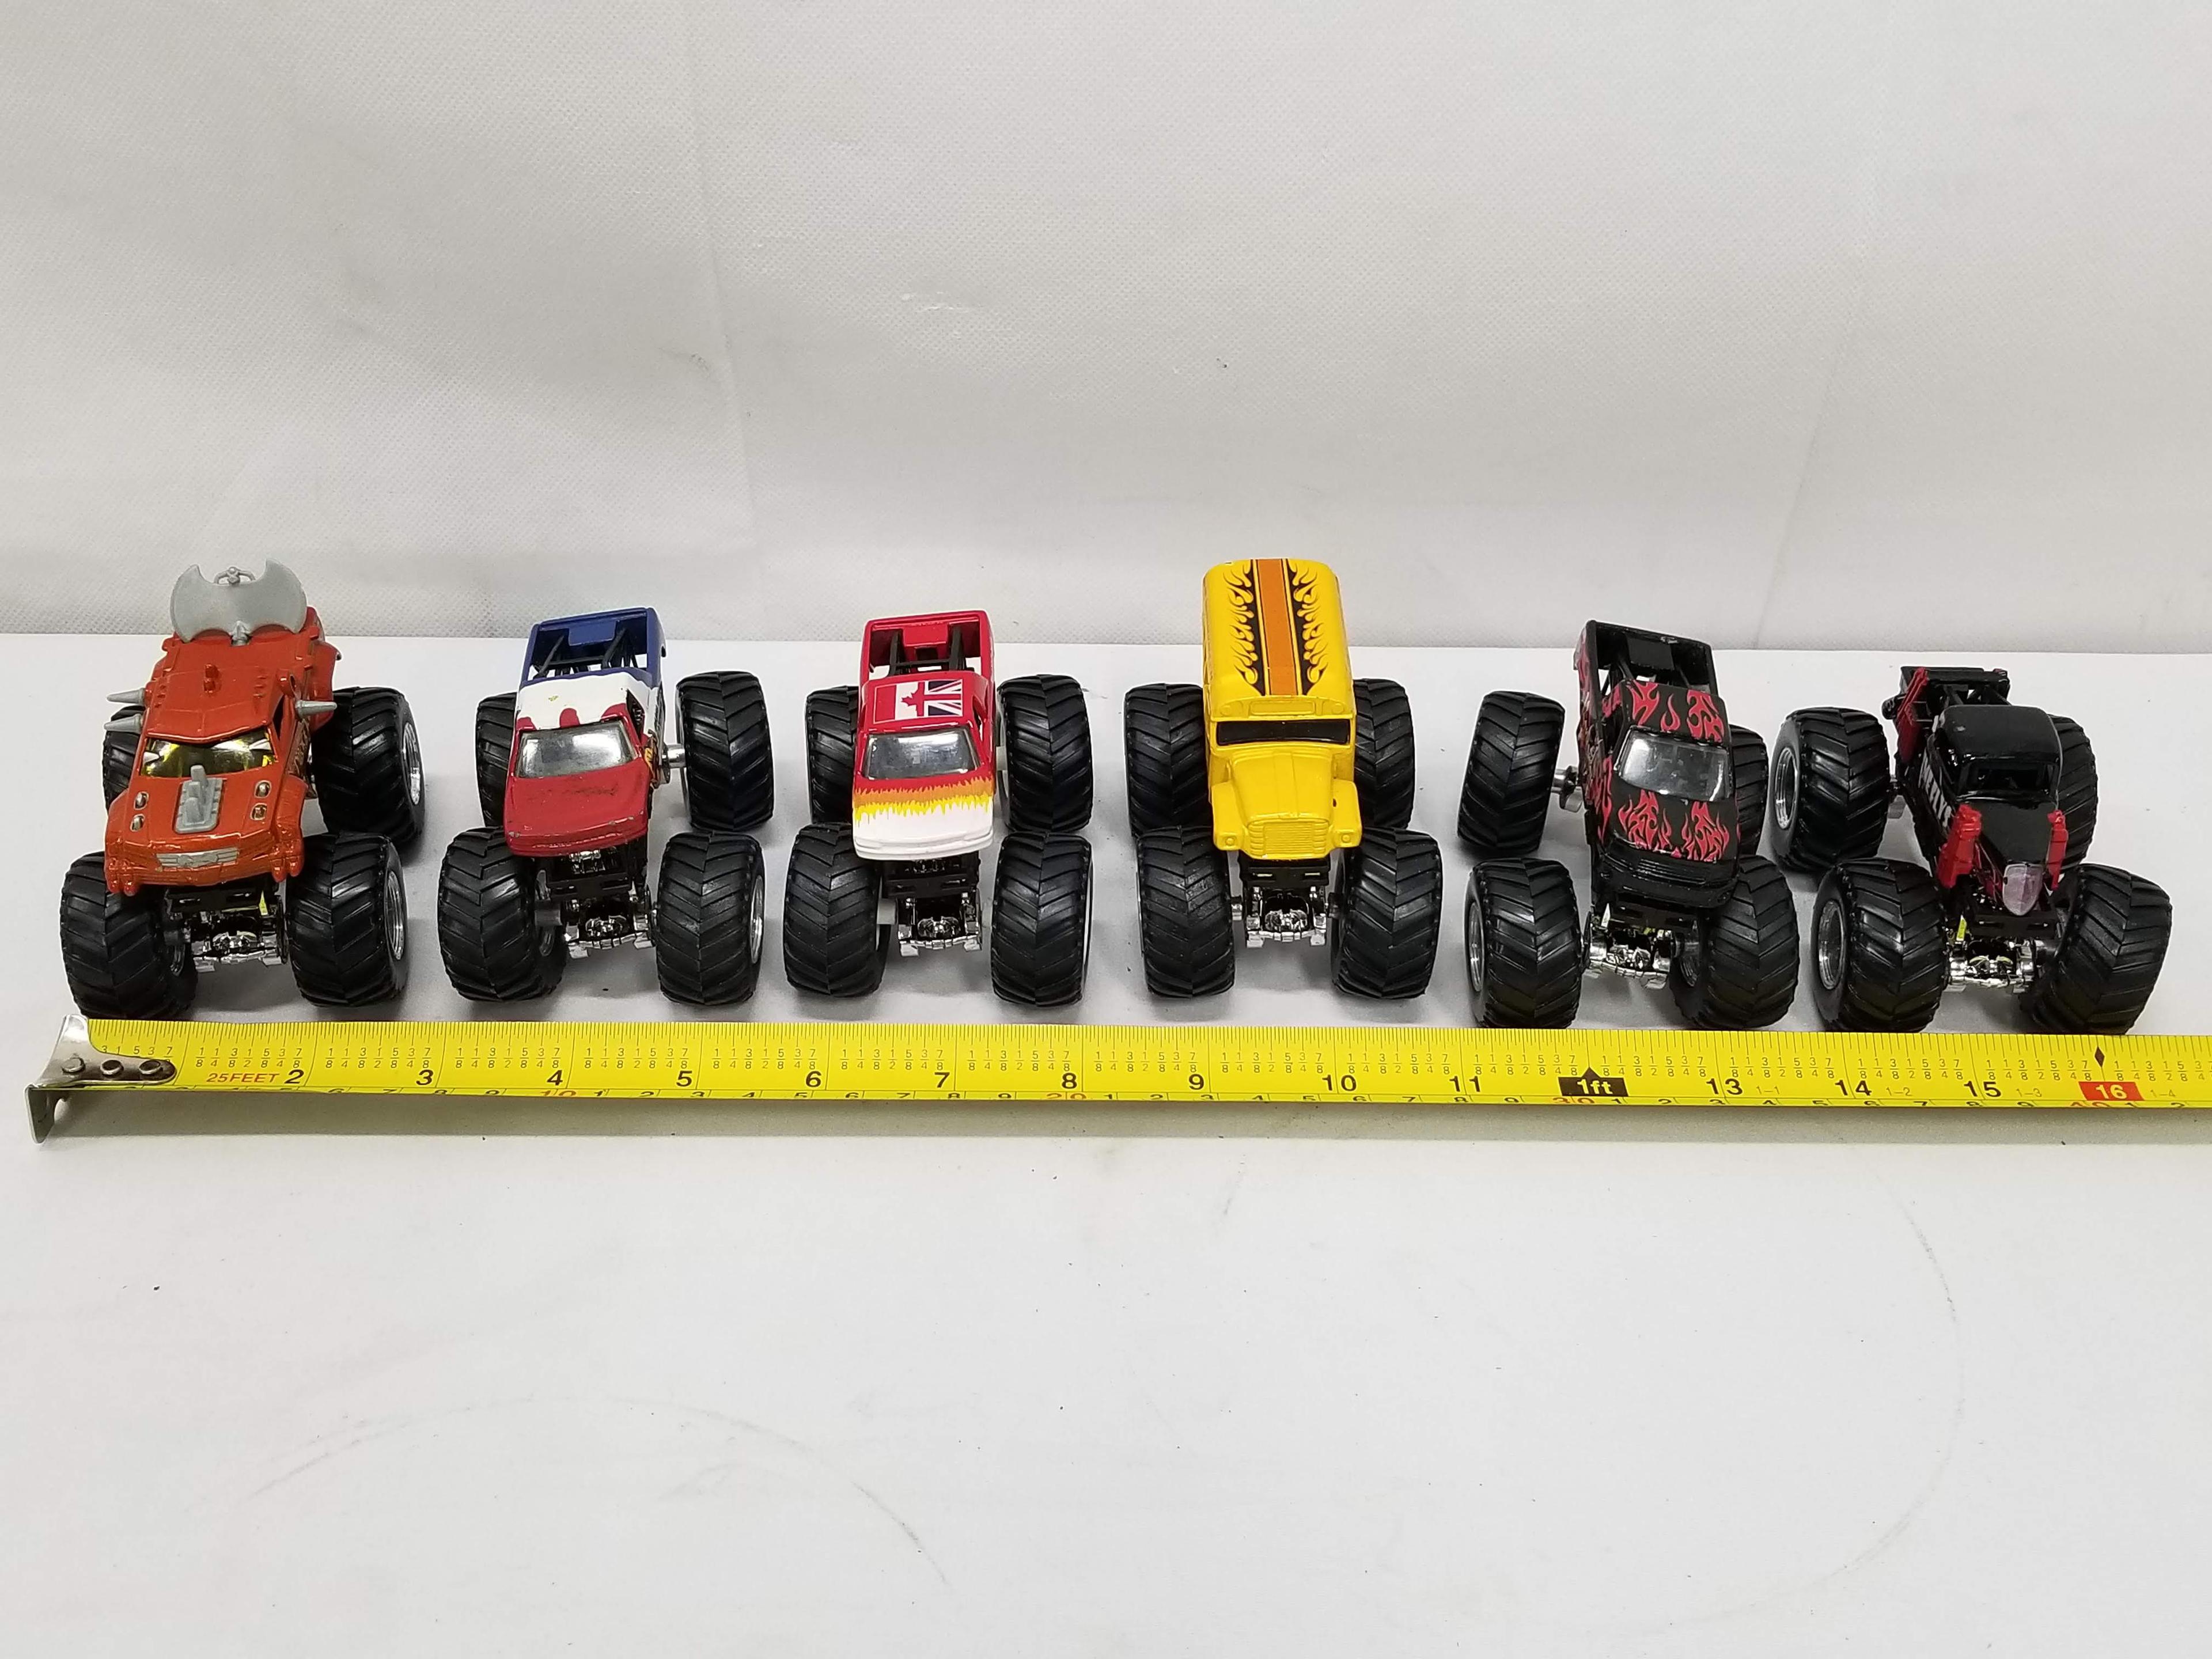 6 Smaller Monster Truck Toys: Driving Skool, Time Flys, etc.